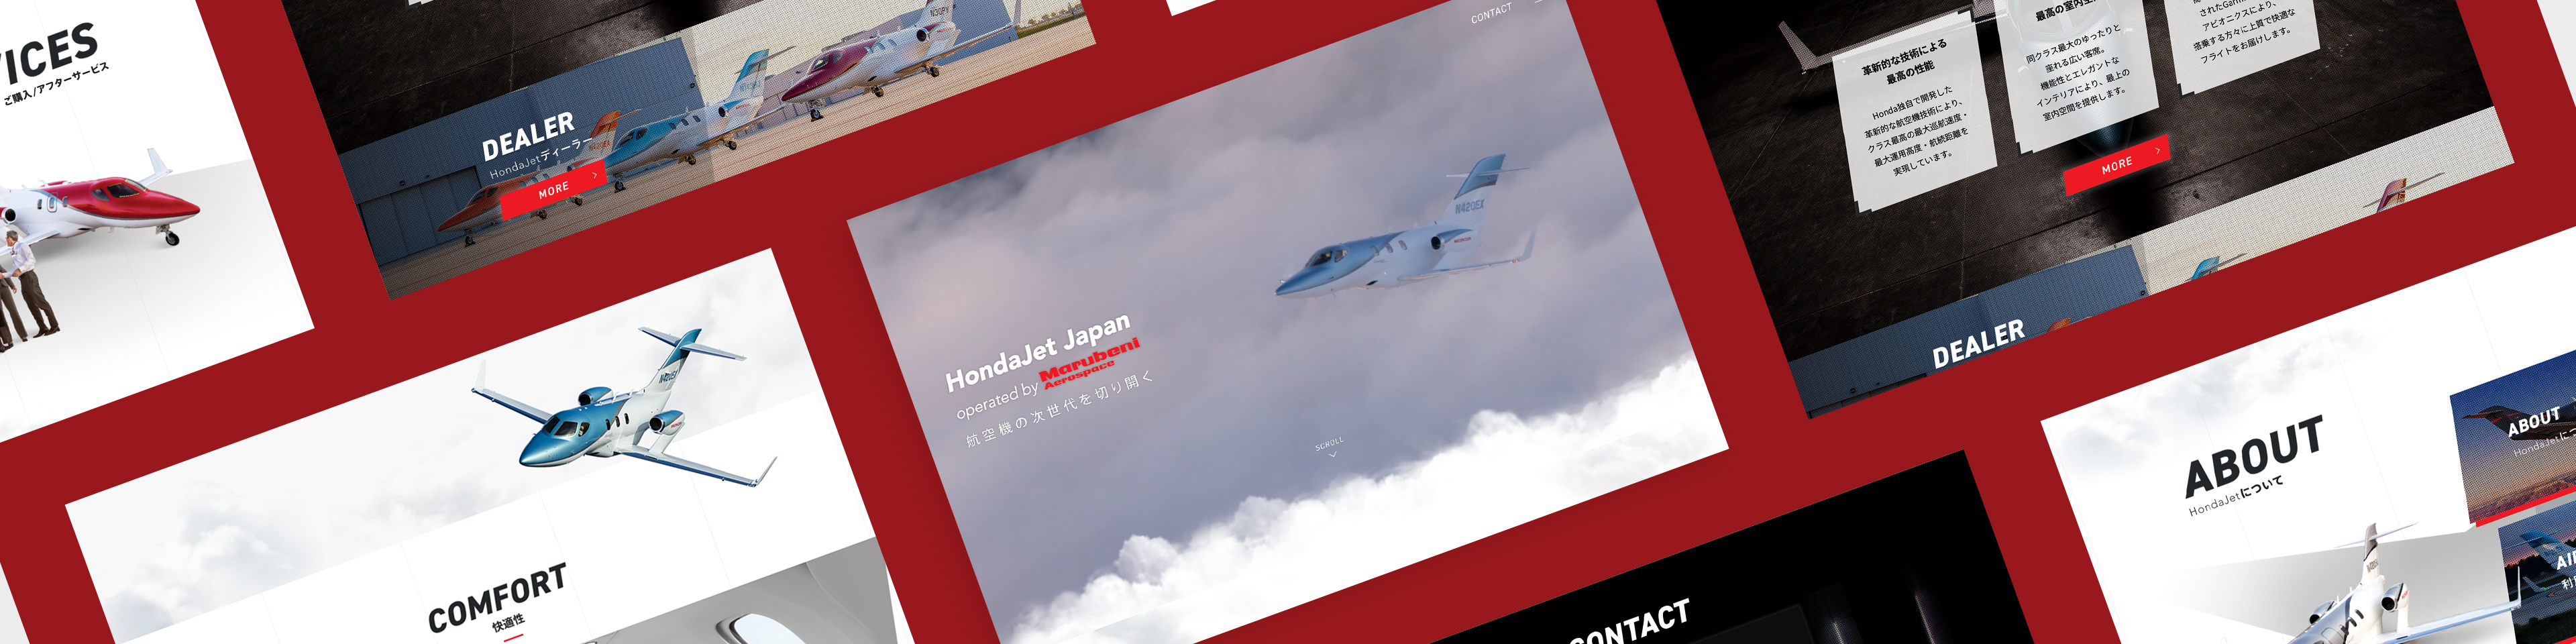 丸紅エアロスペース株式会社
Honda Jet Japan
ブランドサイト